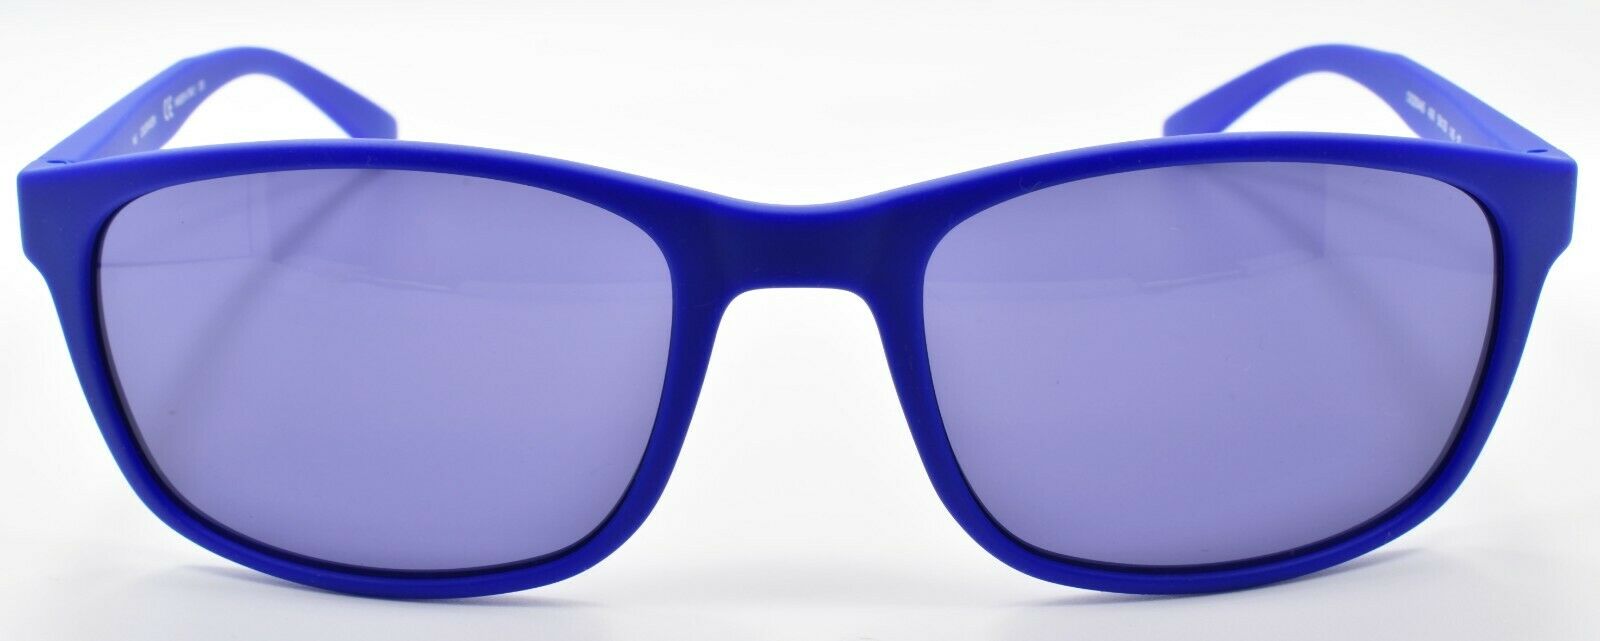 2-Calvin Klein CK20544S 406 Men's Sunglasses 56-20-145 Matte Cobalt / Blue ITALY-883901129274-IKSpecs